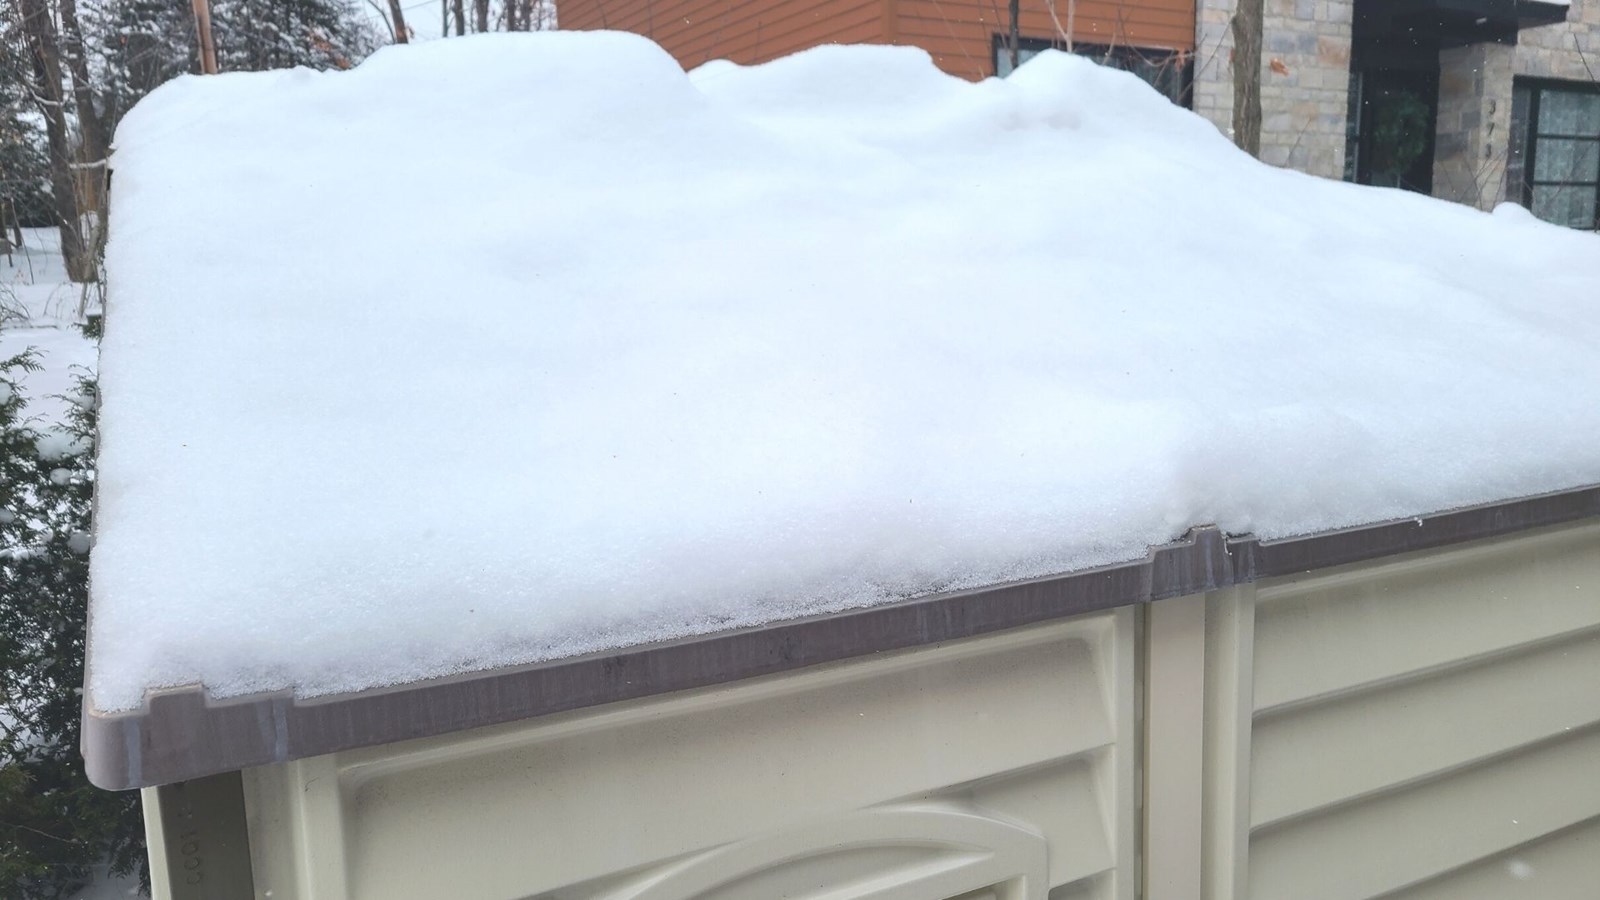 Poids de la neige : le déneigement des toits est important - TVA CIMT CHAU